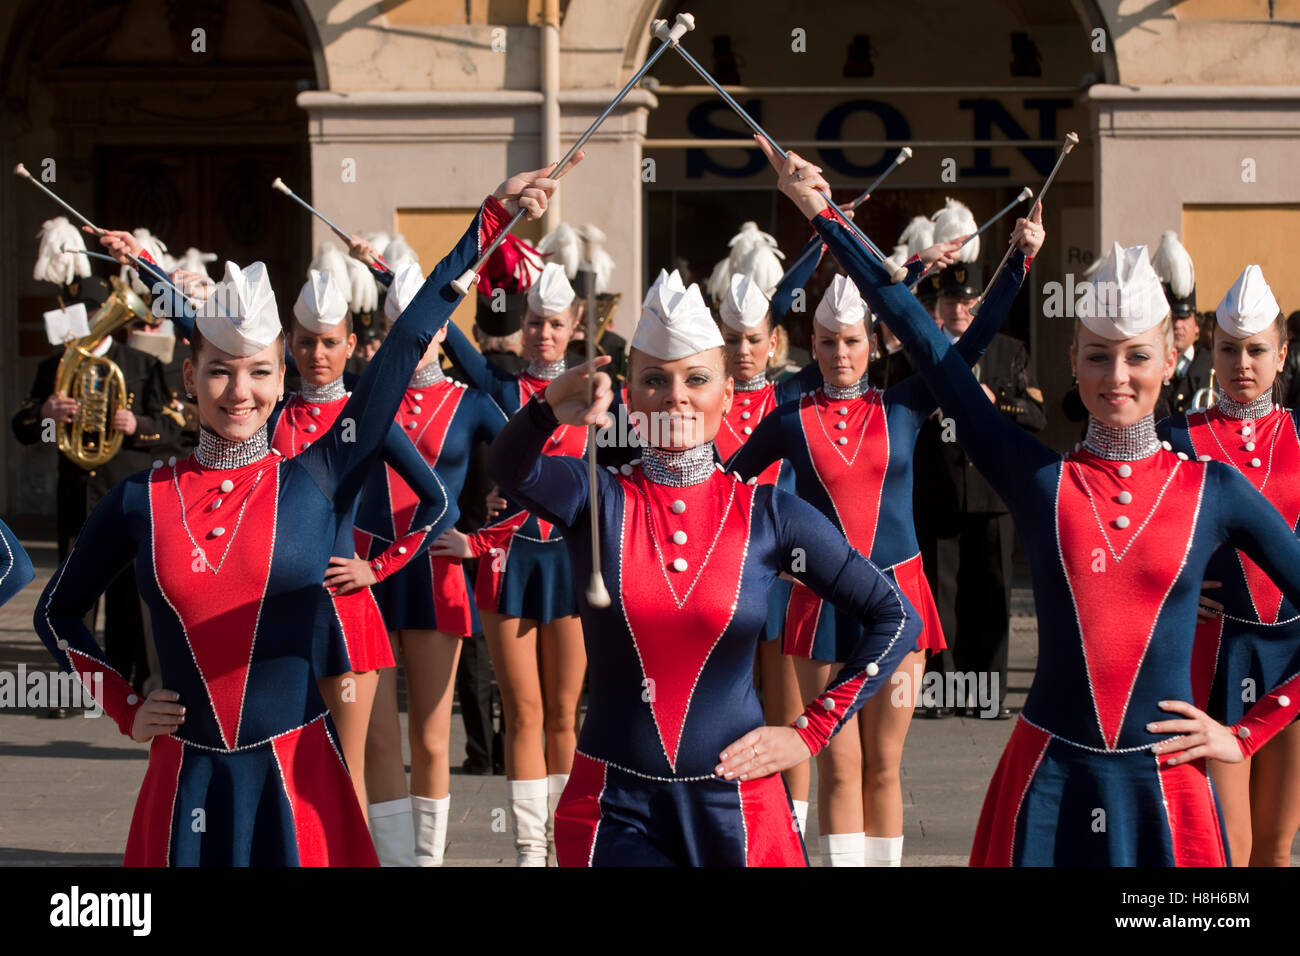 Frankreich, Cote d Azur, Nizza, Karneval, Tänzerinnen an der Place Garibaldi Stock Photo